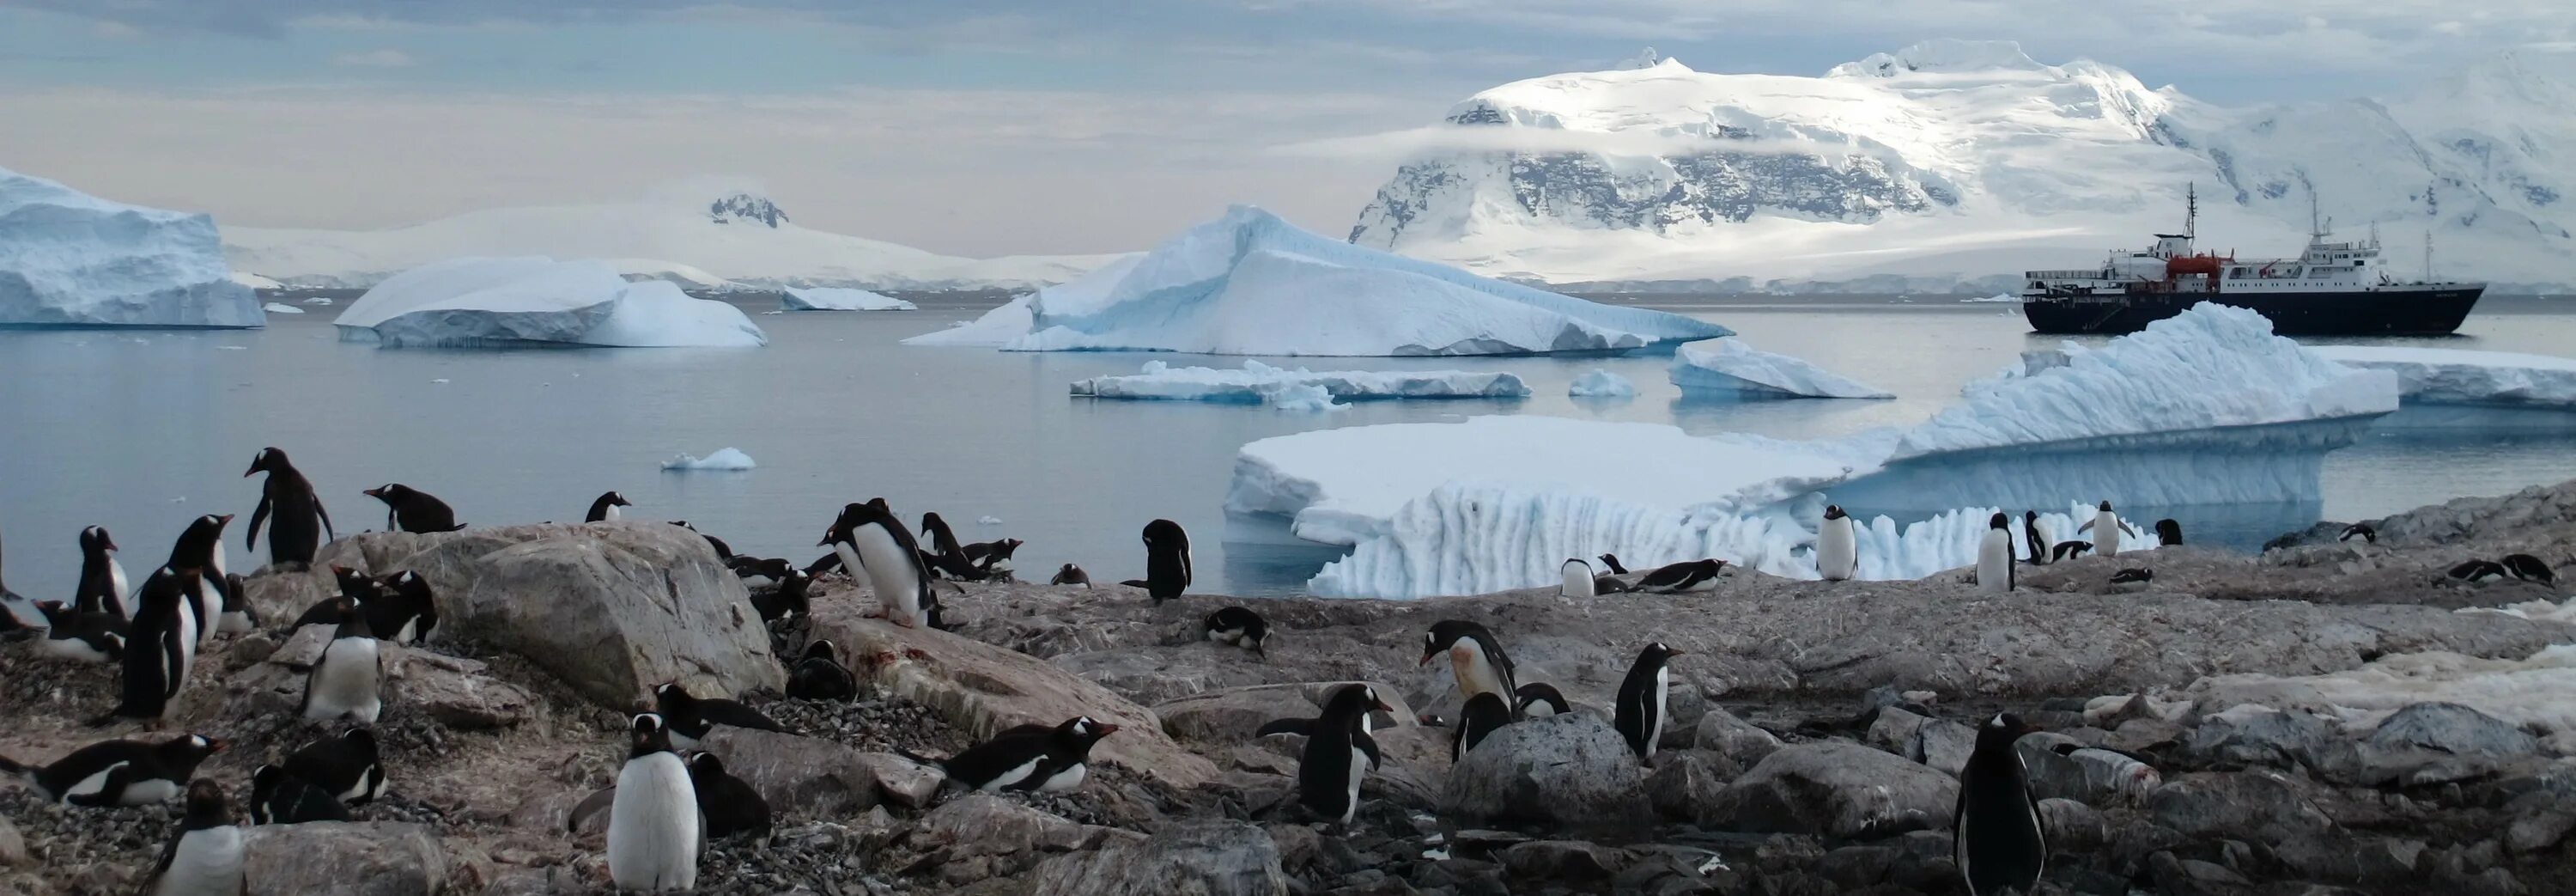 Арктические пустыни изменение природы человеком. Аэродром Новолазаревская Антарктида. Западная Антарктида полуостров. Остров Сеймур Антарктида. Зона арктических пустынь в Антарктиде.